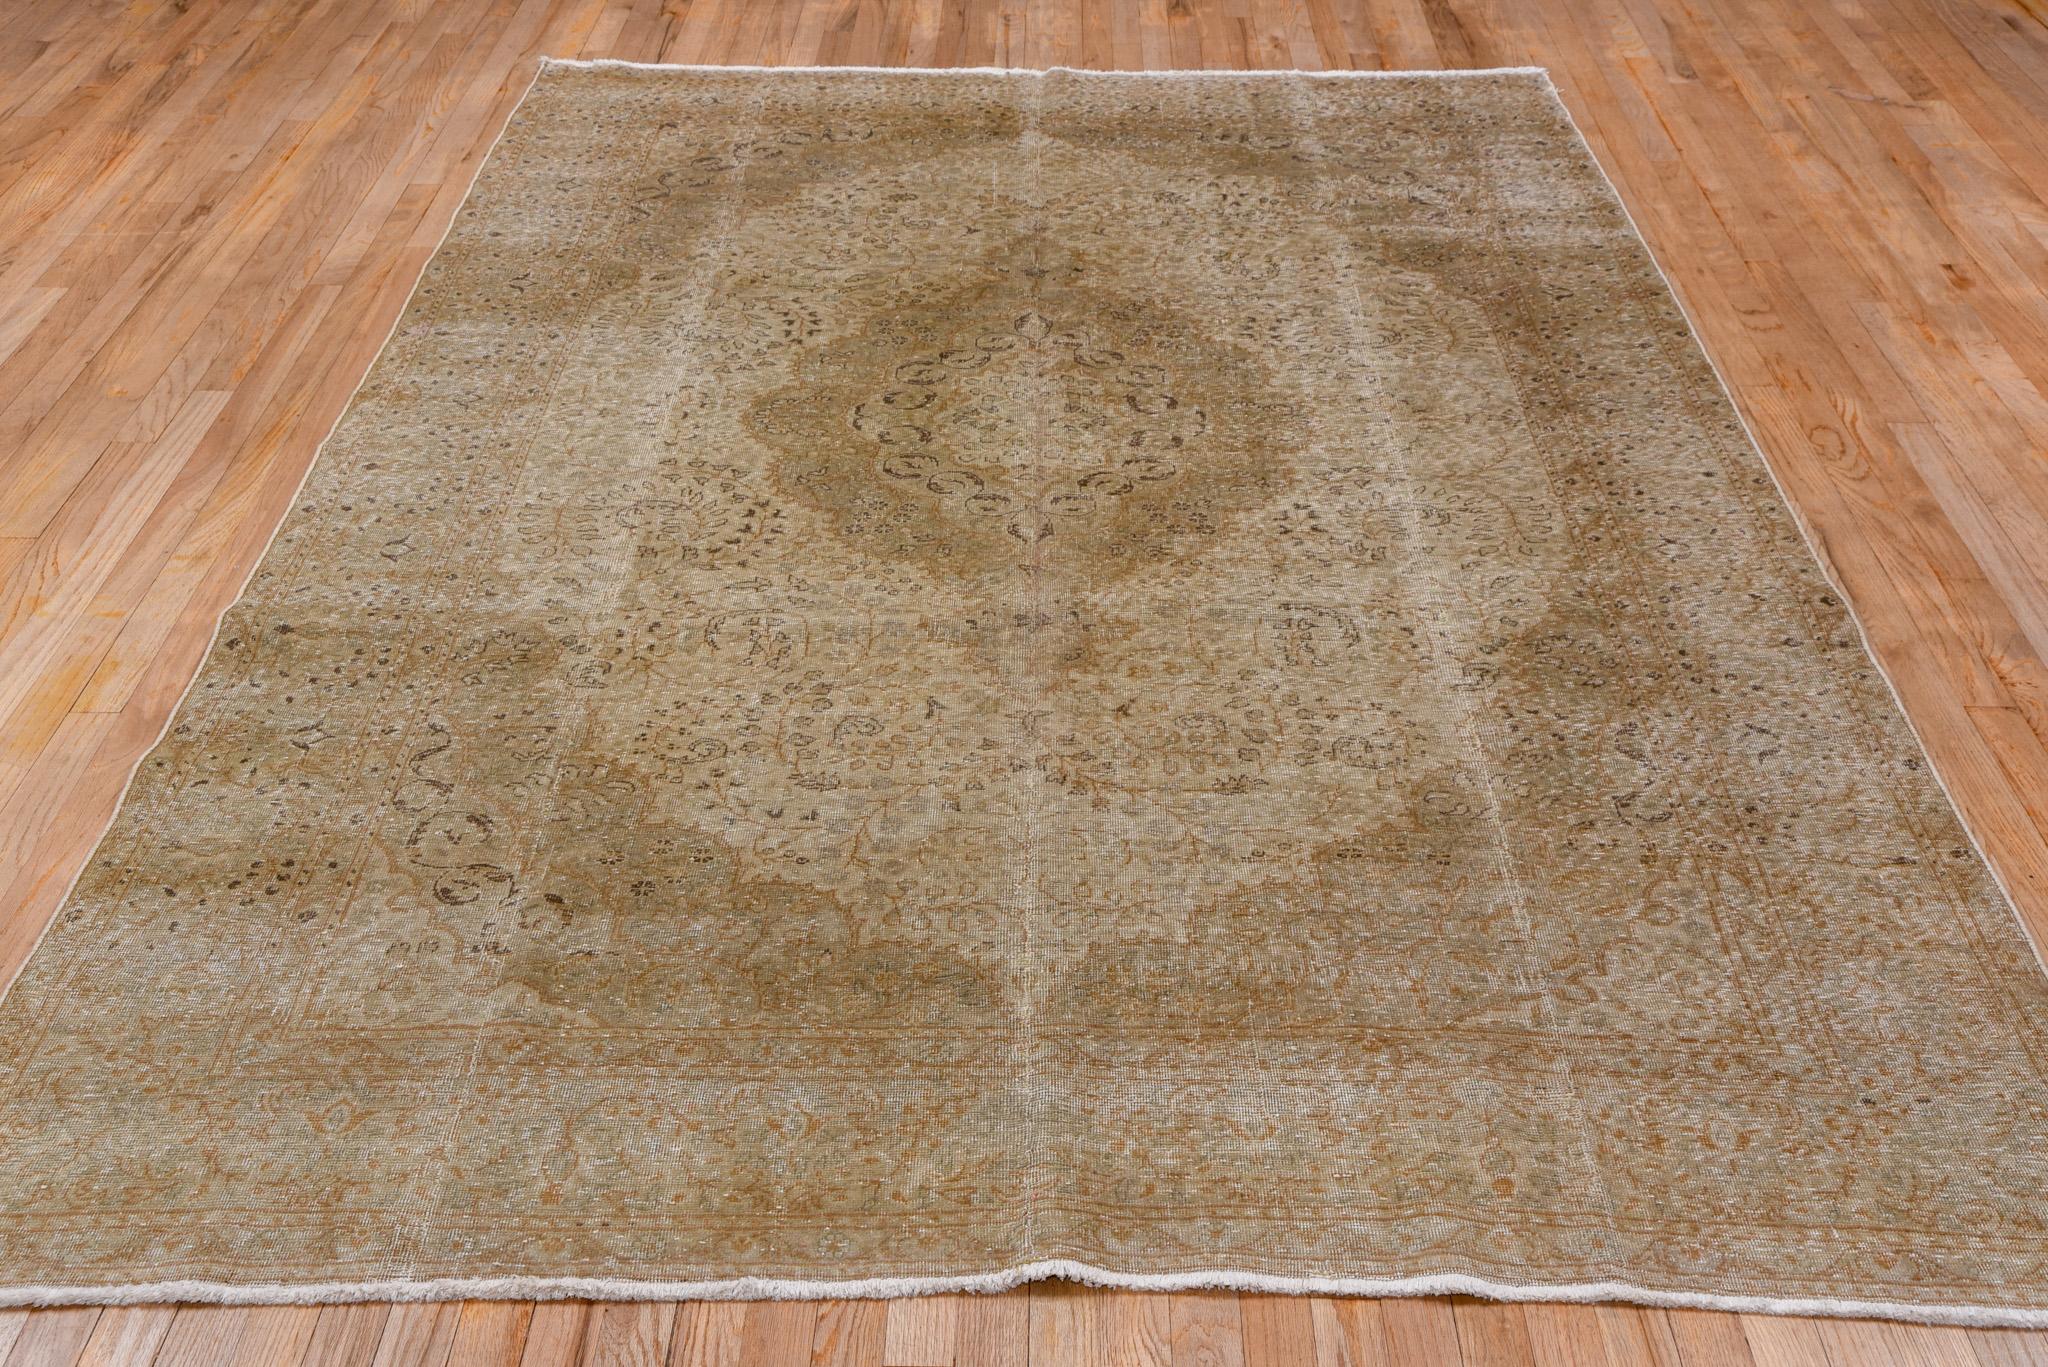 Antike türkische Sivas-Teppiche sind eine Art von handgewebten Teppichen, die aus der Stadt Sivas in der Türkei stammen. Die Stadt Sivas in Zentralanatolien blickt auf eine jahrhundertelange Geschichte der Teppichweberei zurück. Diese Teppiche sind